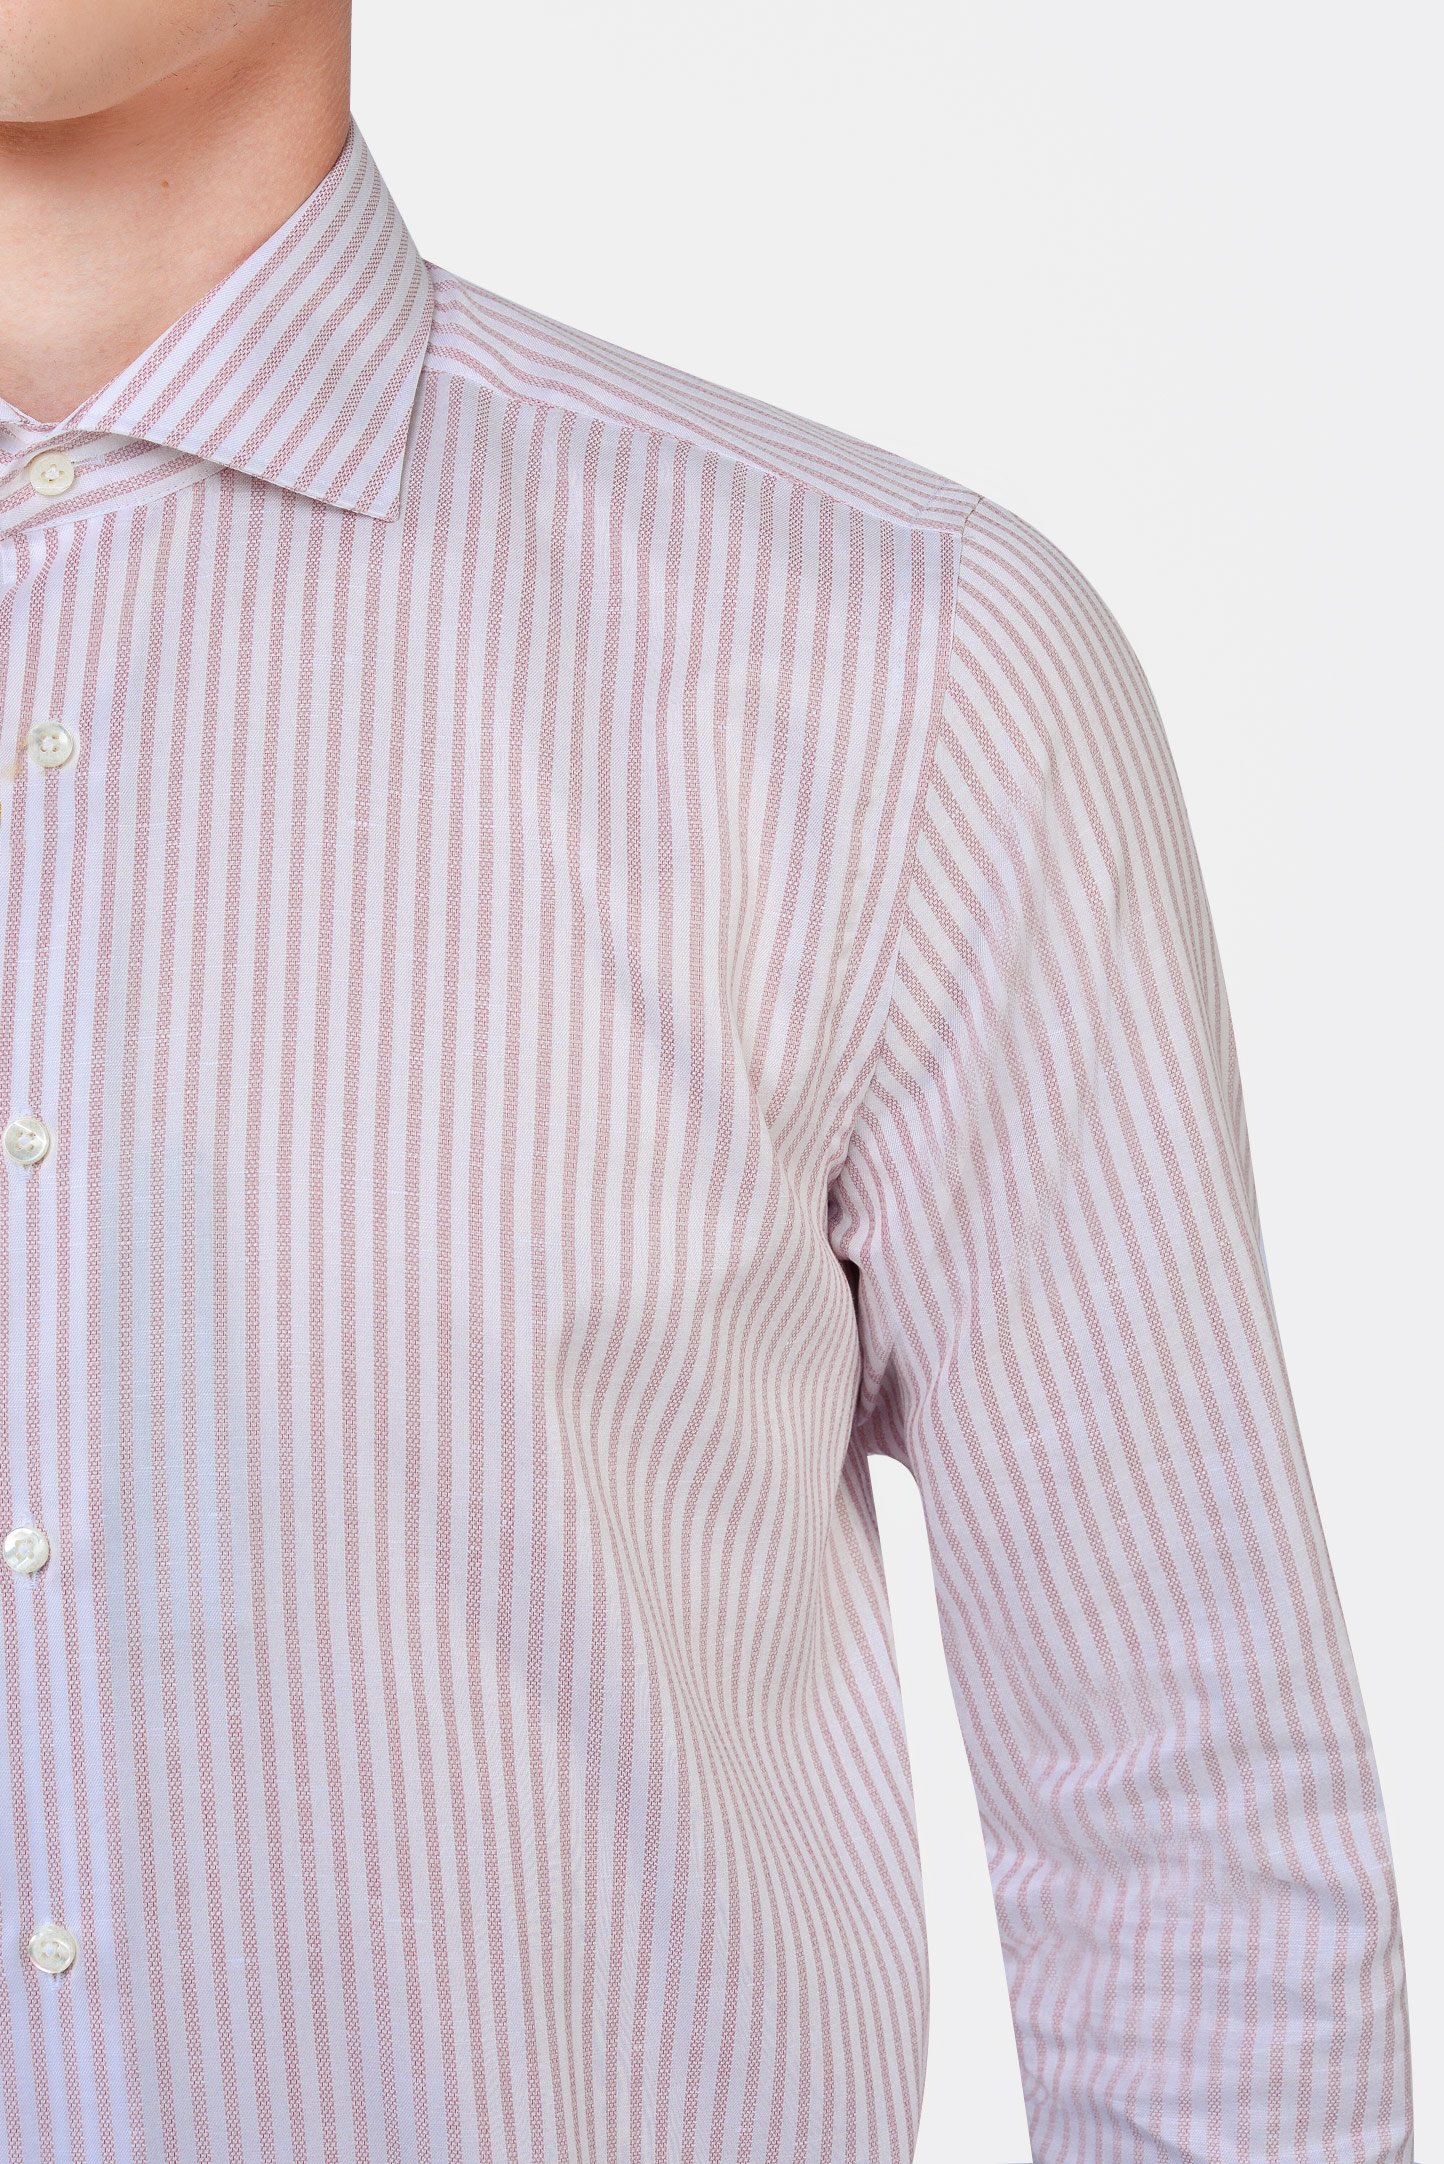 Рубашка CANALI GR02289/901, цвет: Розовый, Мужской